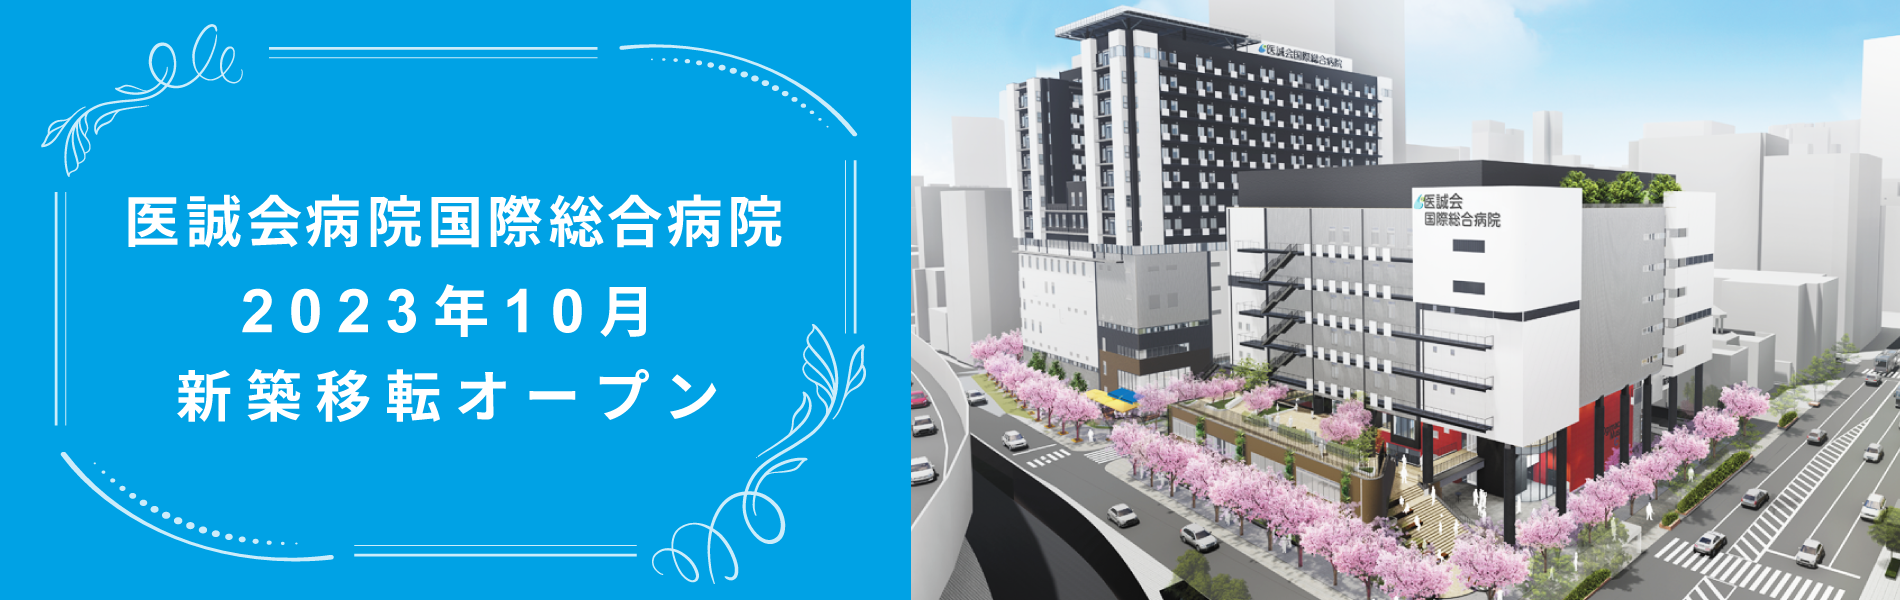 医誠会国際総合病院2023年10月新築移転オープン